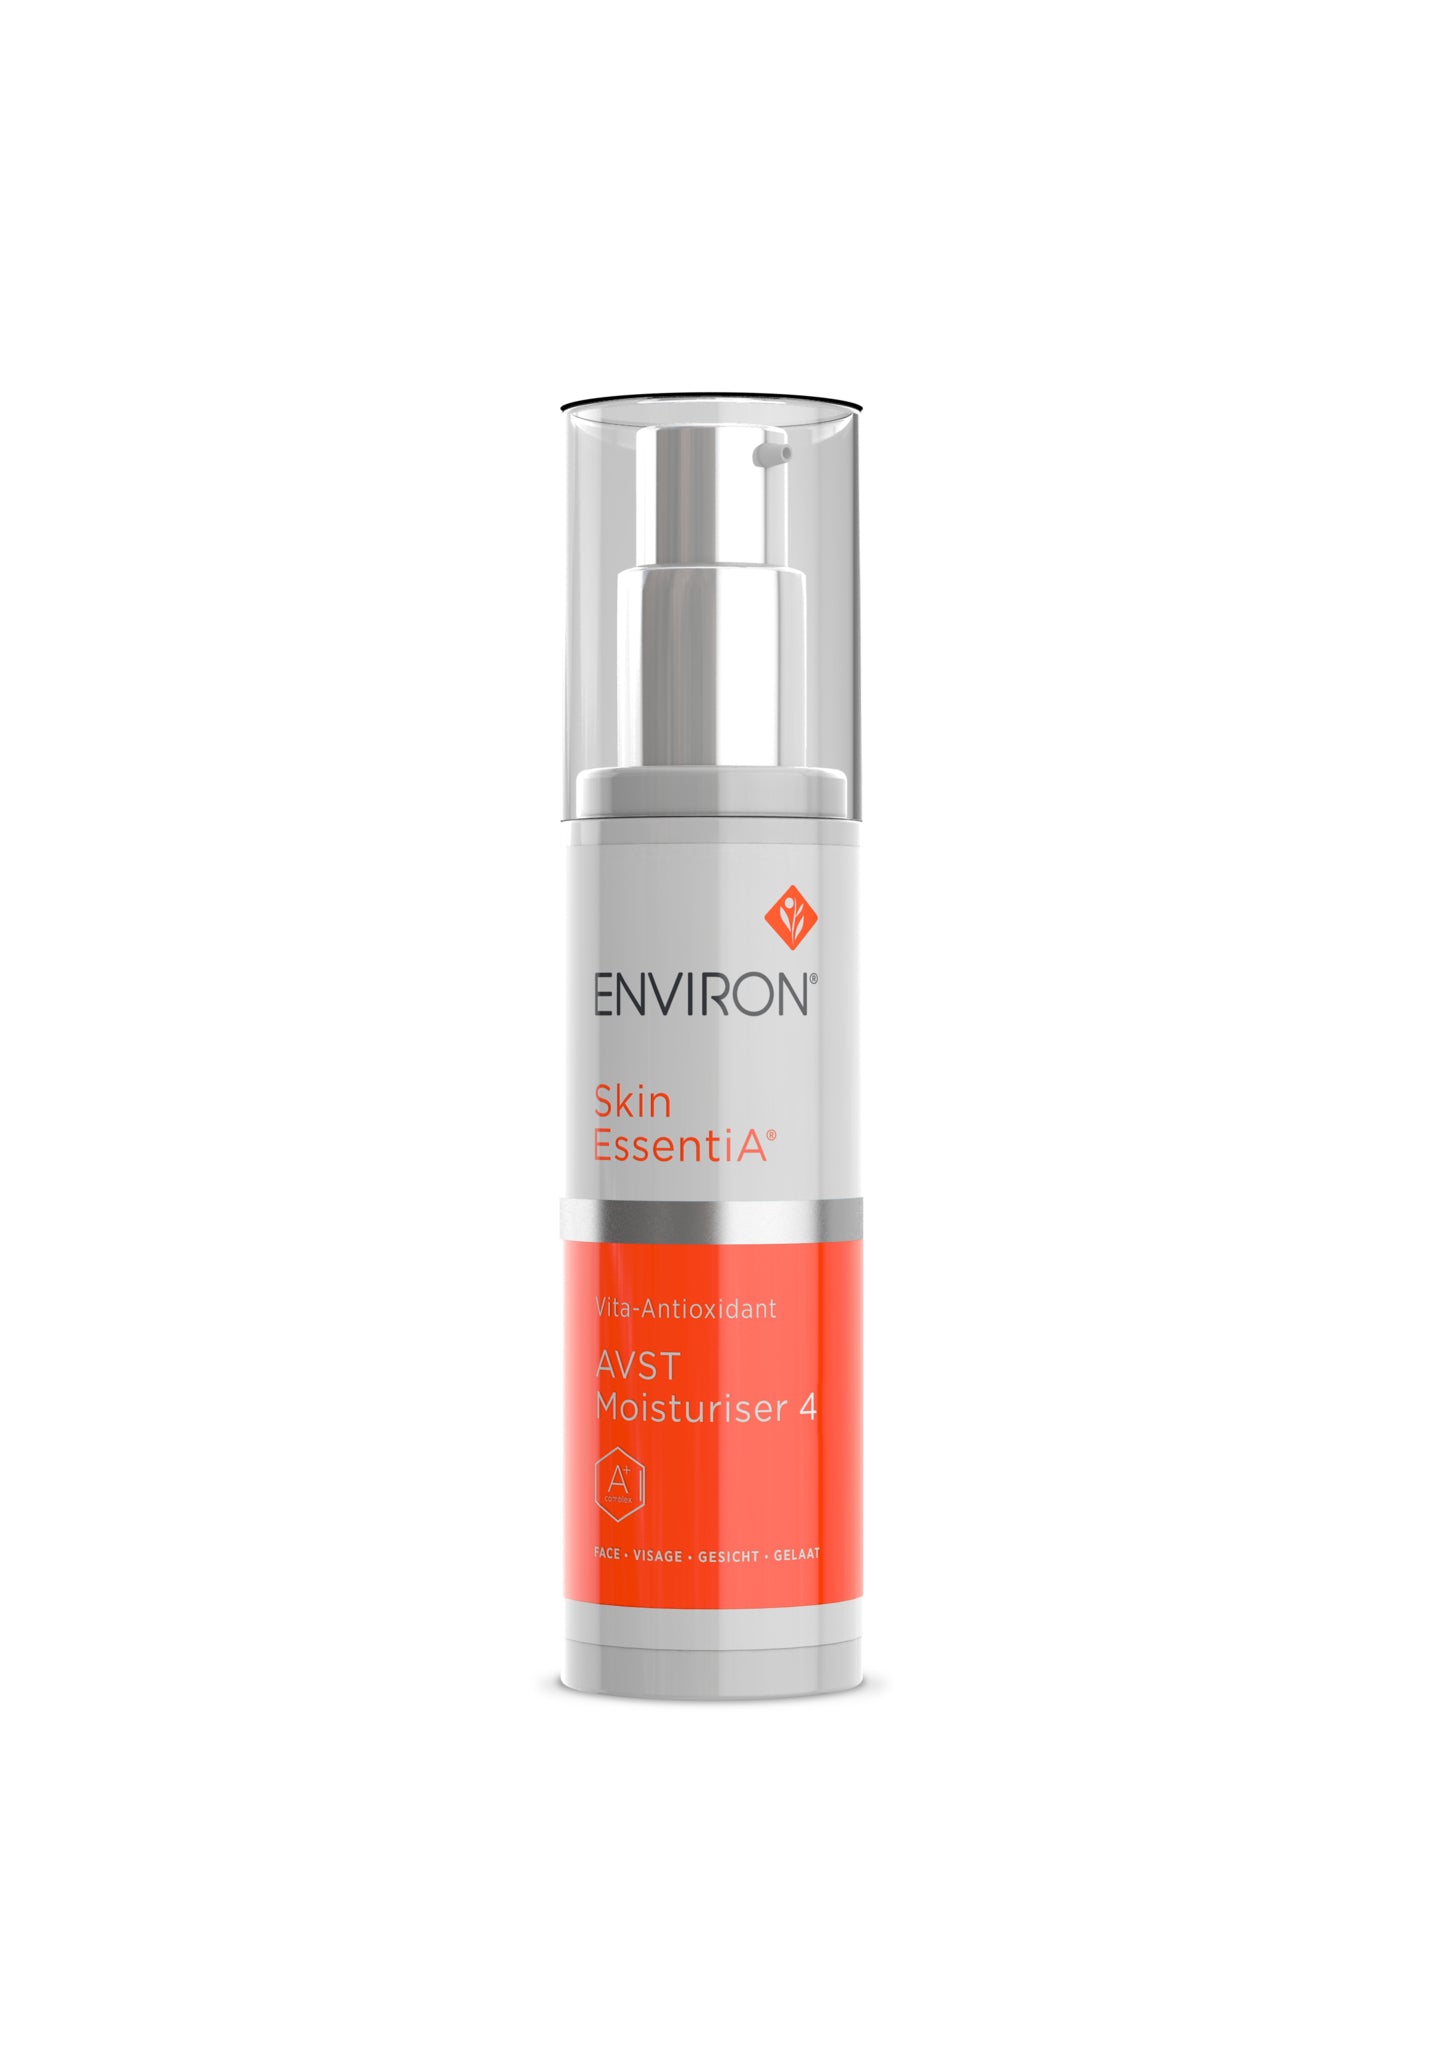 Environ Skin EssentiA® range - Vita-Antioxiant AVST Moisturiser 4